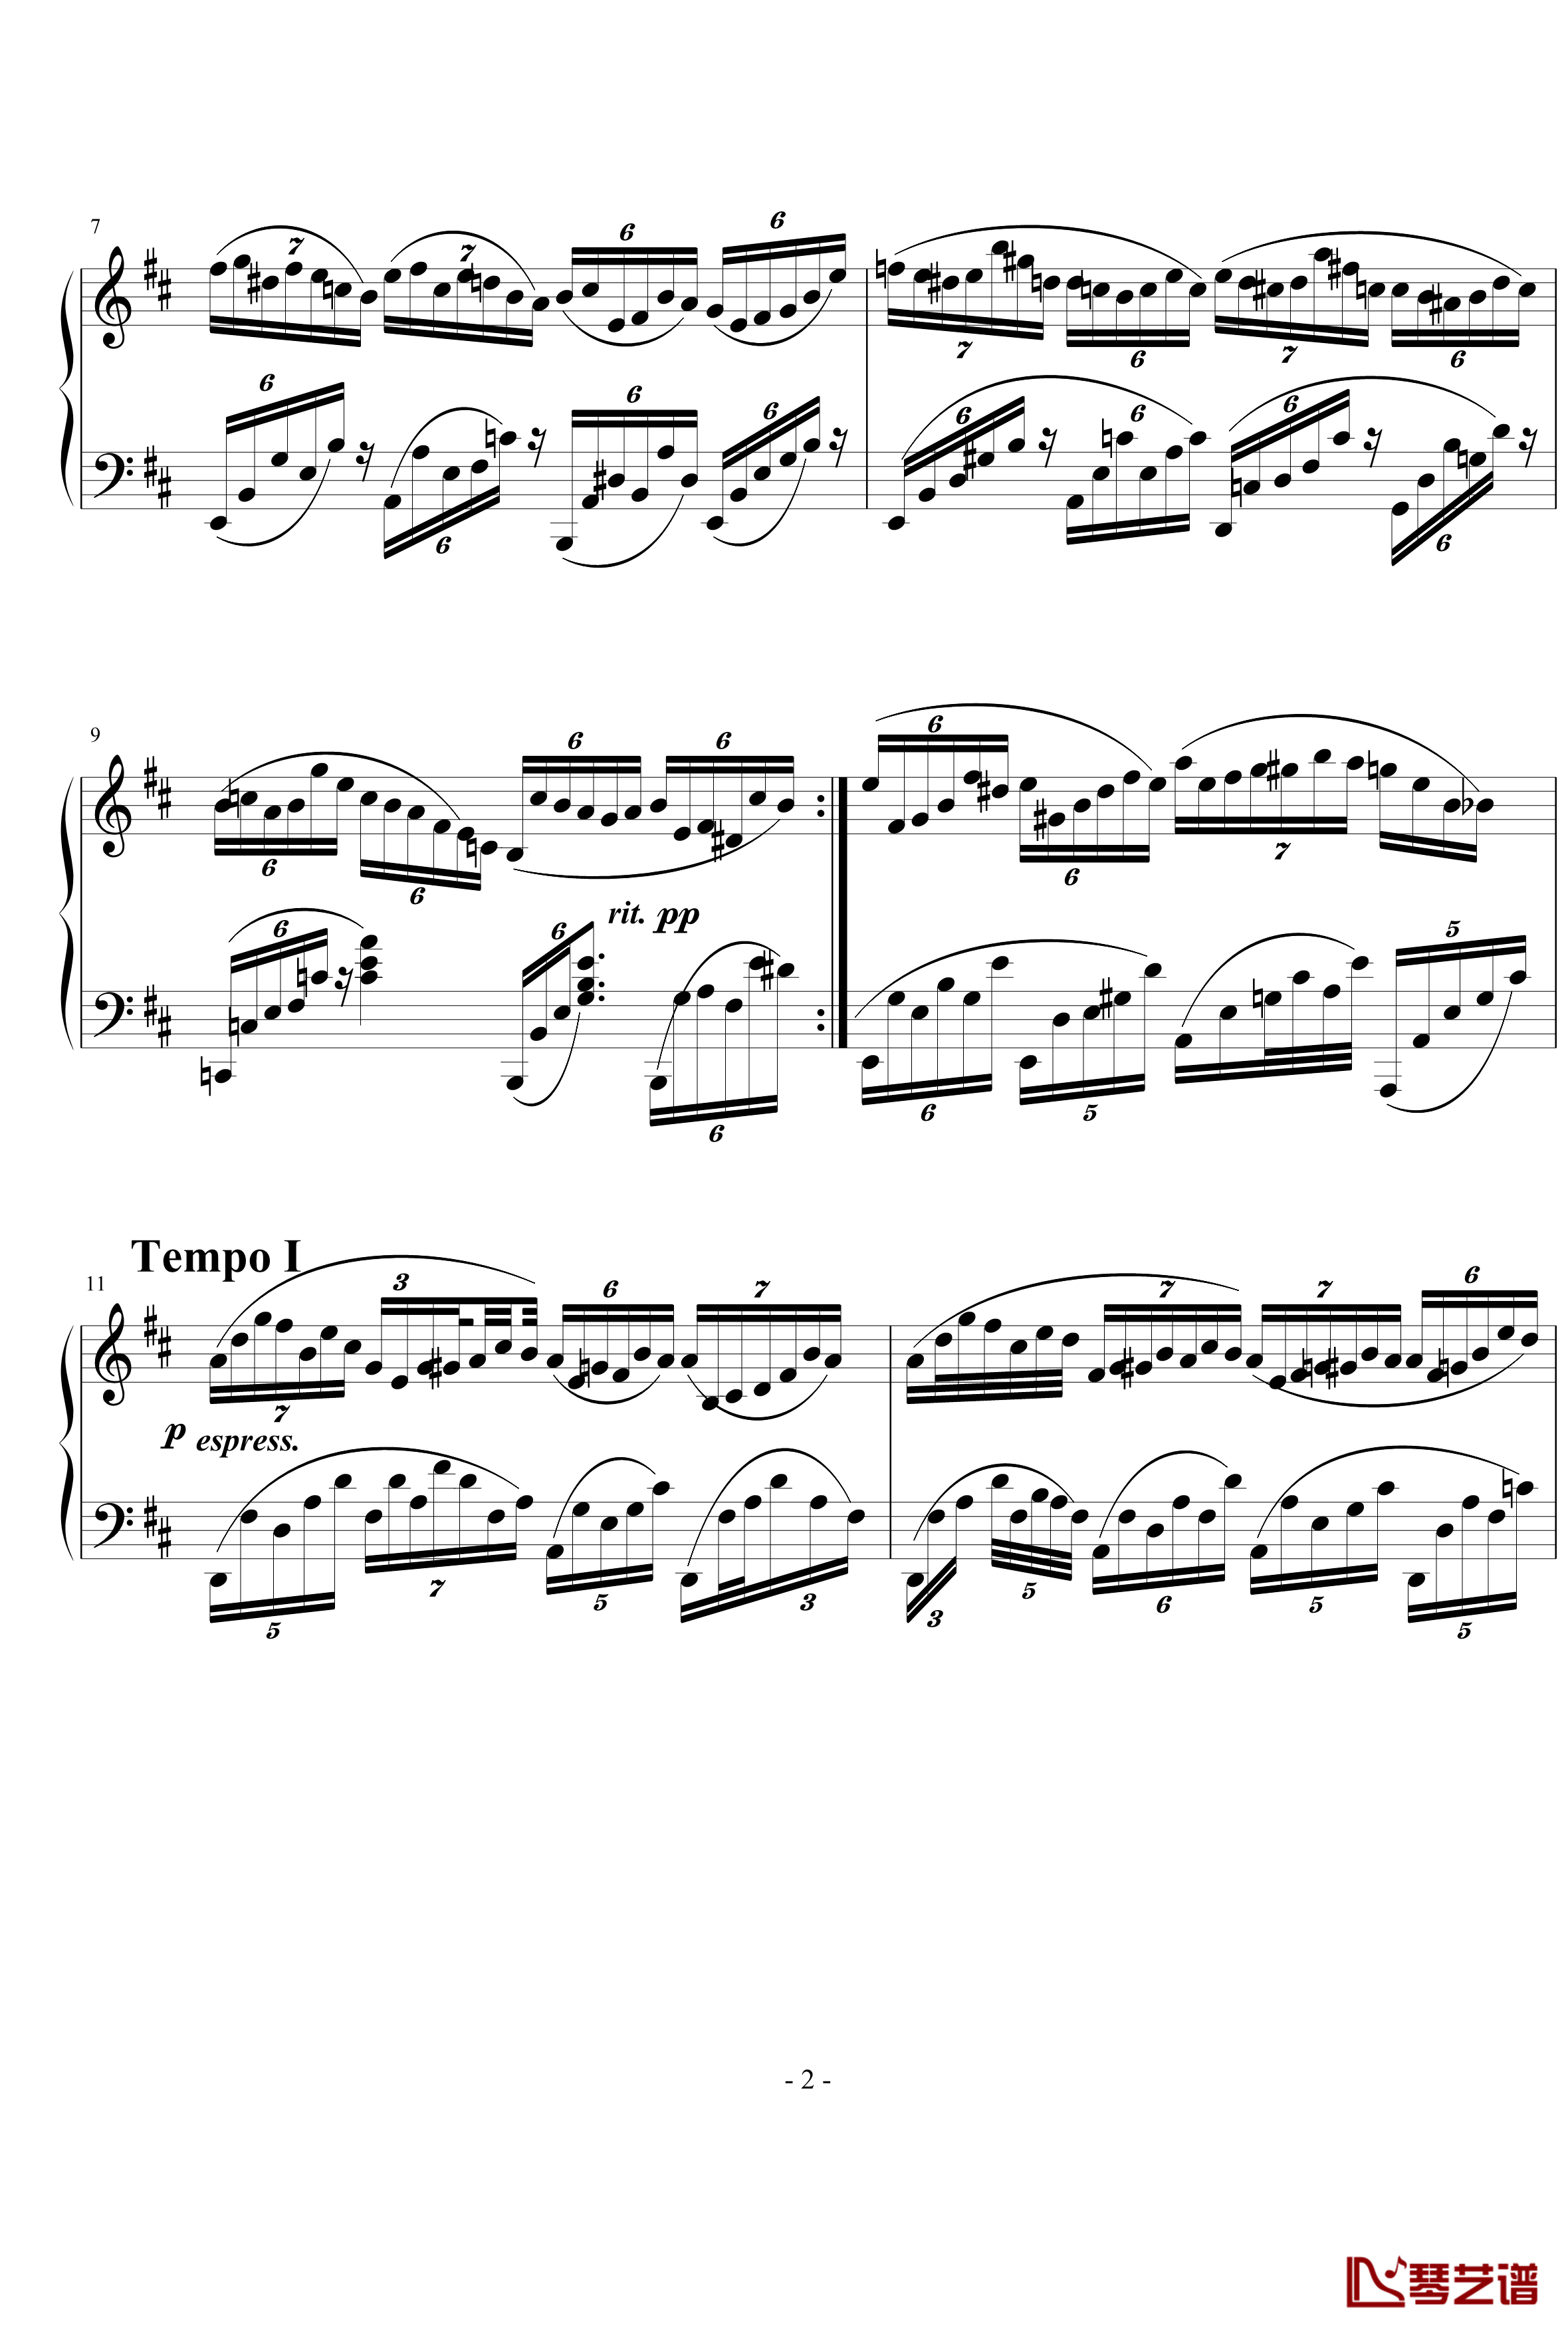 不均等练习曲钢琴谱-nyride2